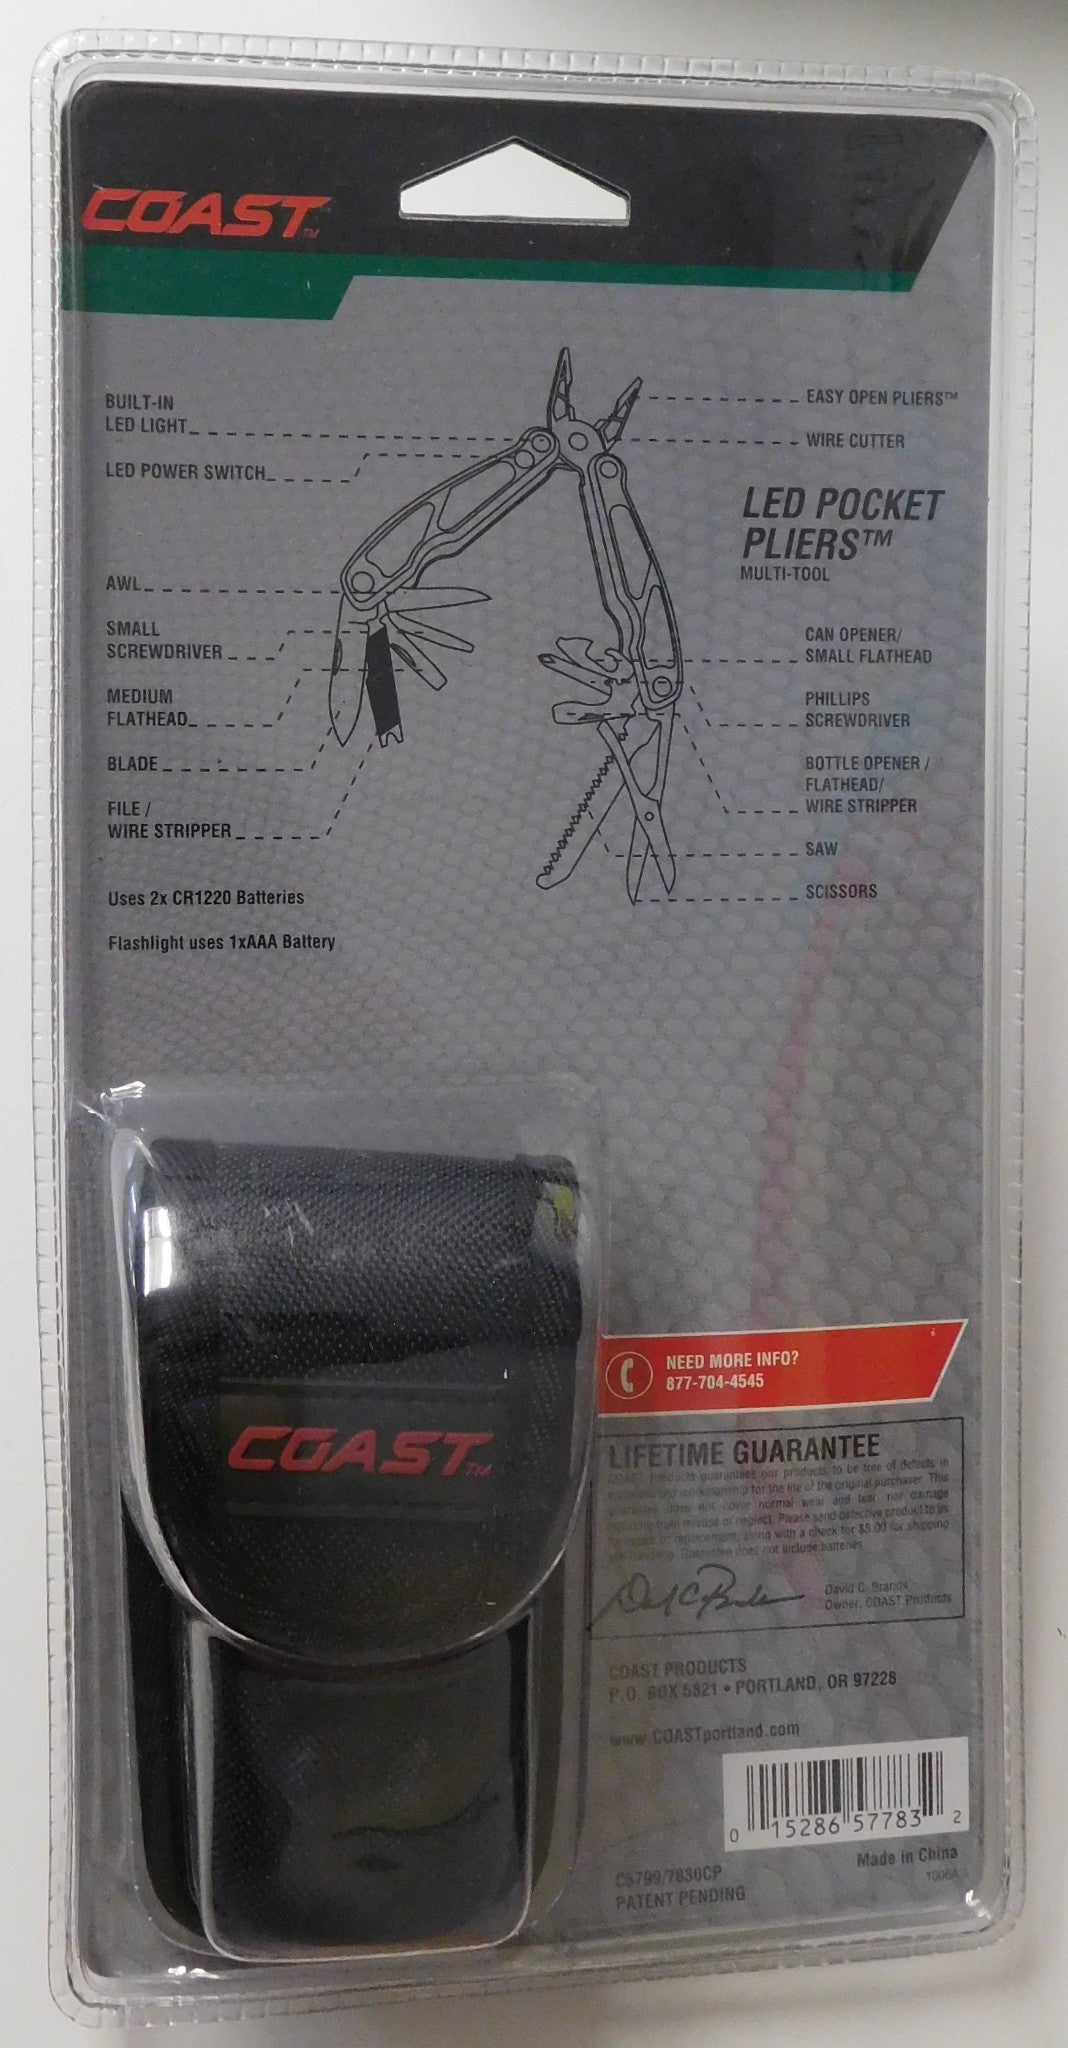 Coast C5799/7830CP Outdoor LED Pocket Pliers Multi-Tool with Bonus LED Light